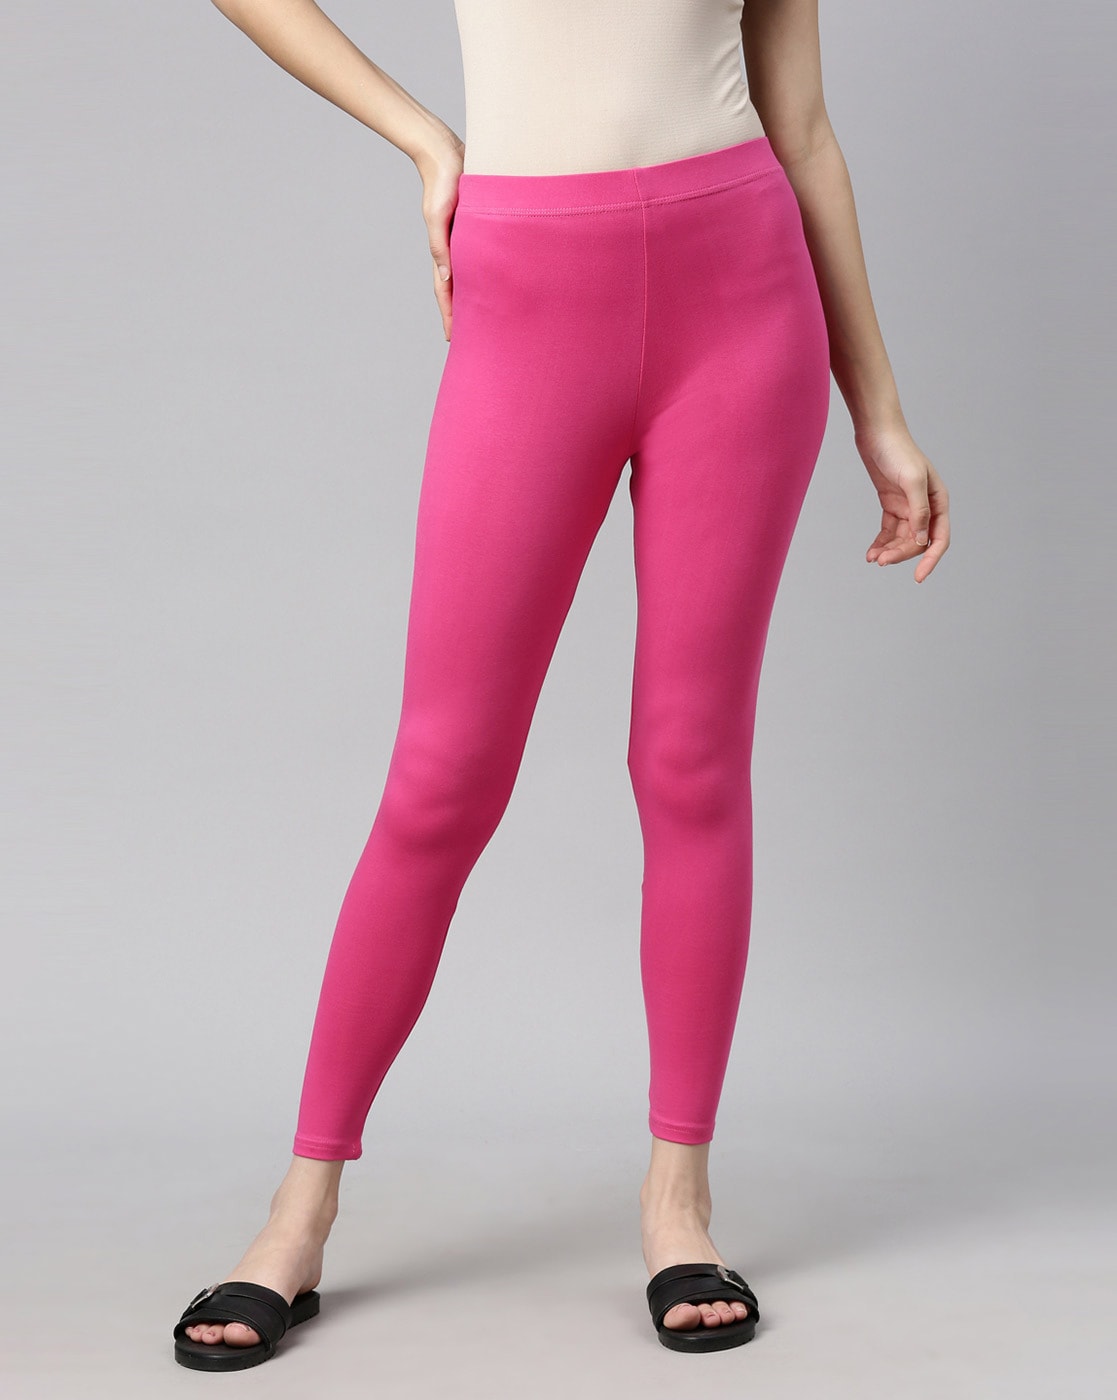 Pink Ribbed Seamless Leggings | Hot Pink Leggings Women Set | Seamless Pink  Sports Bra - Yoga Sets - Aliexpress